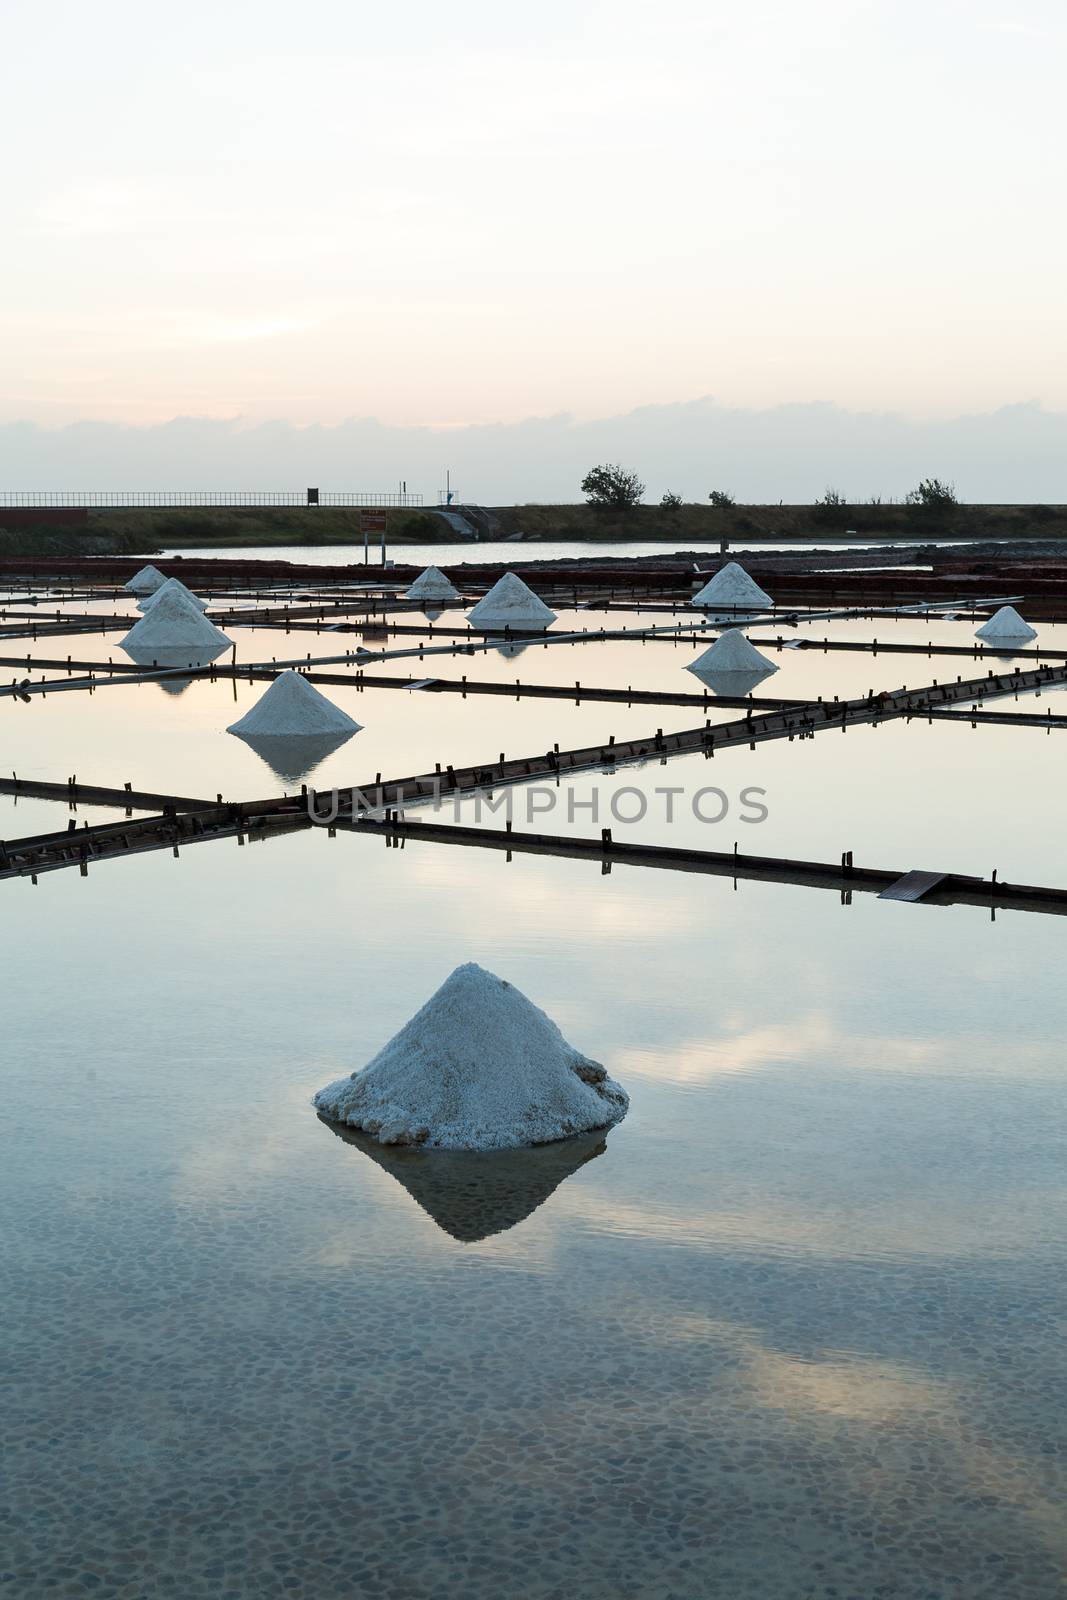 Salt pans in Tainan